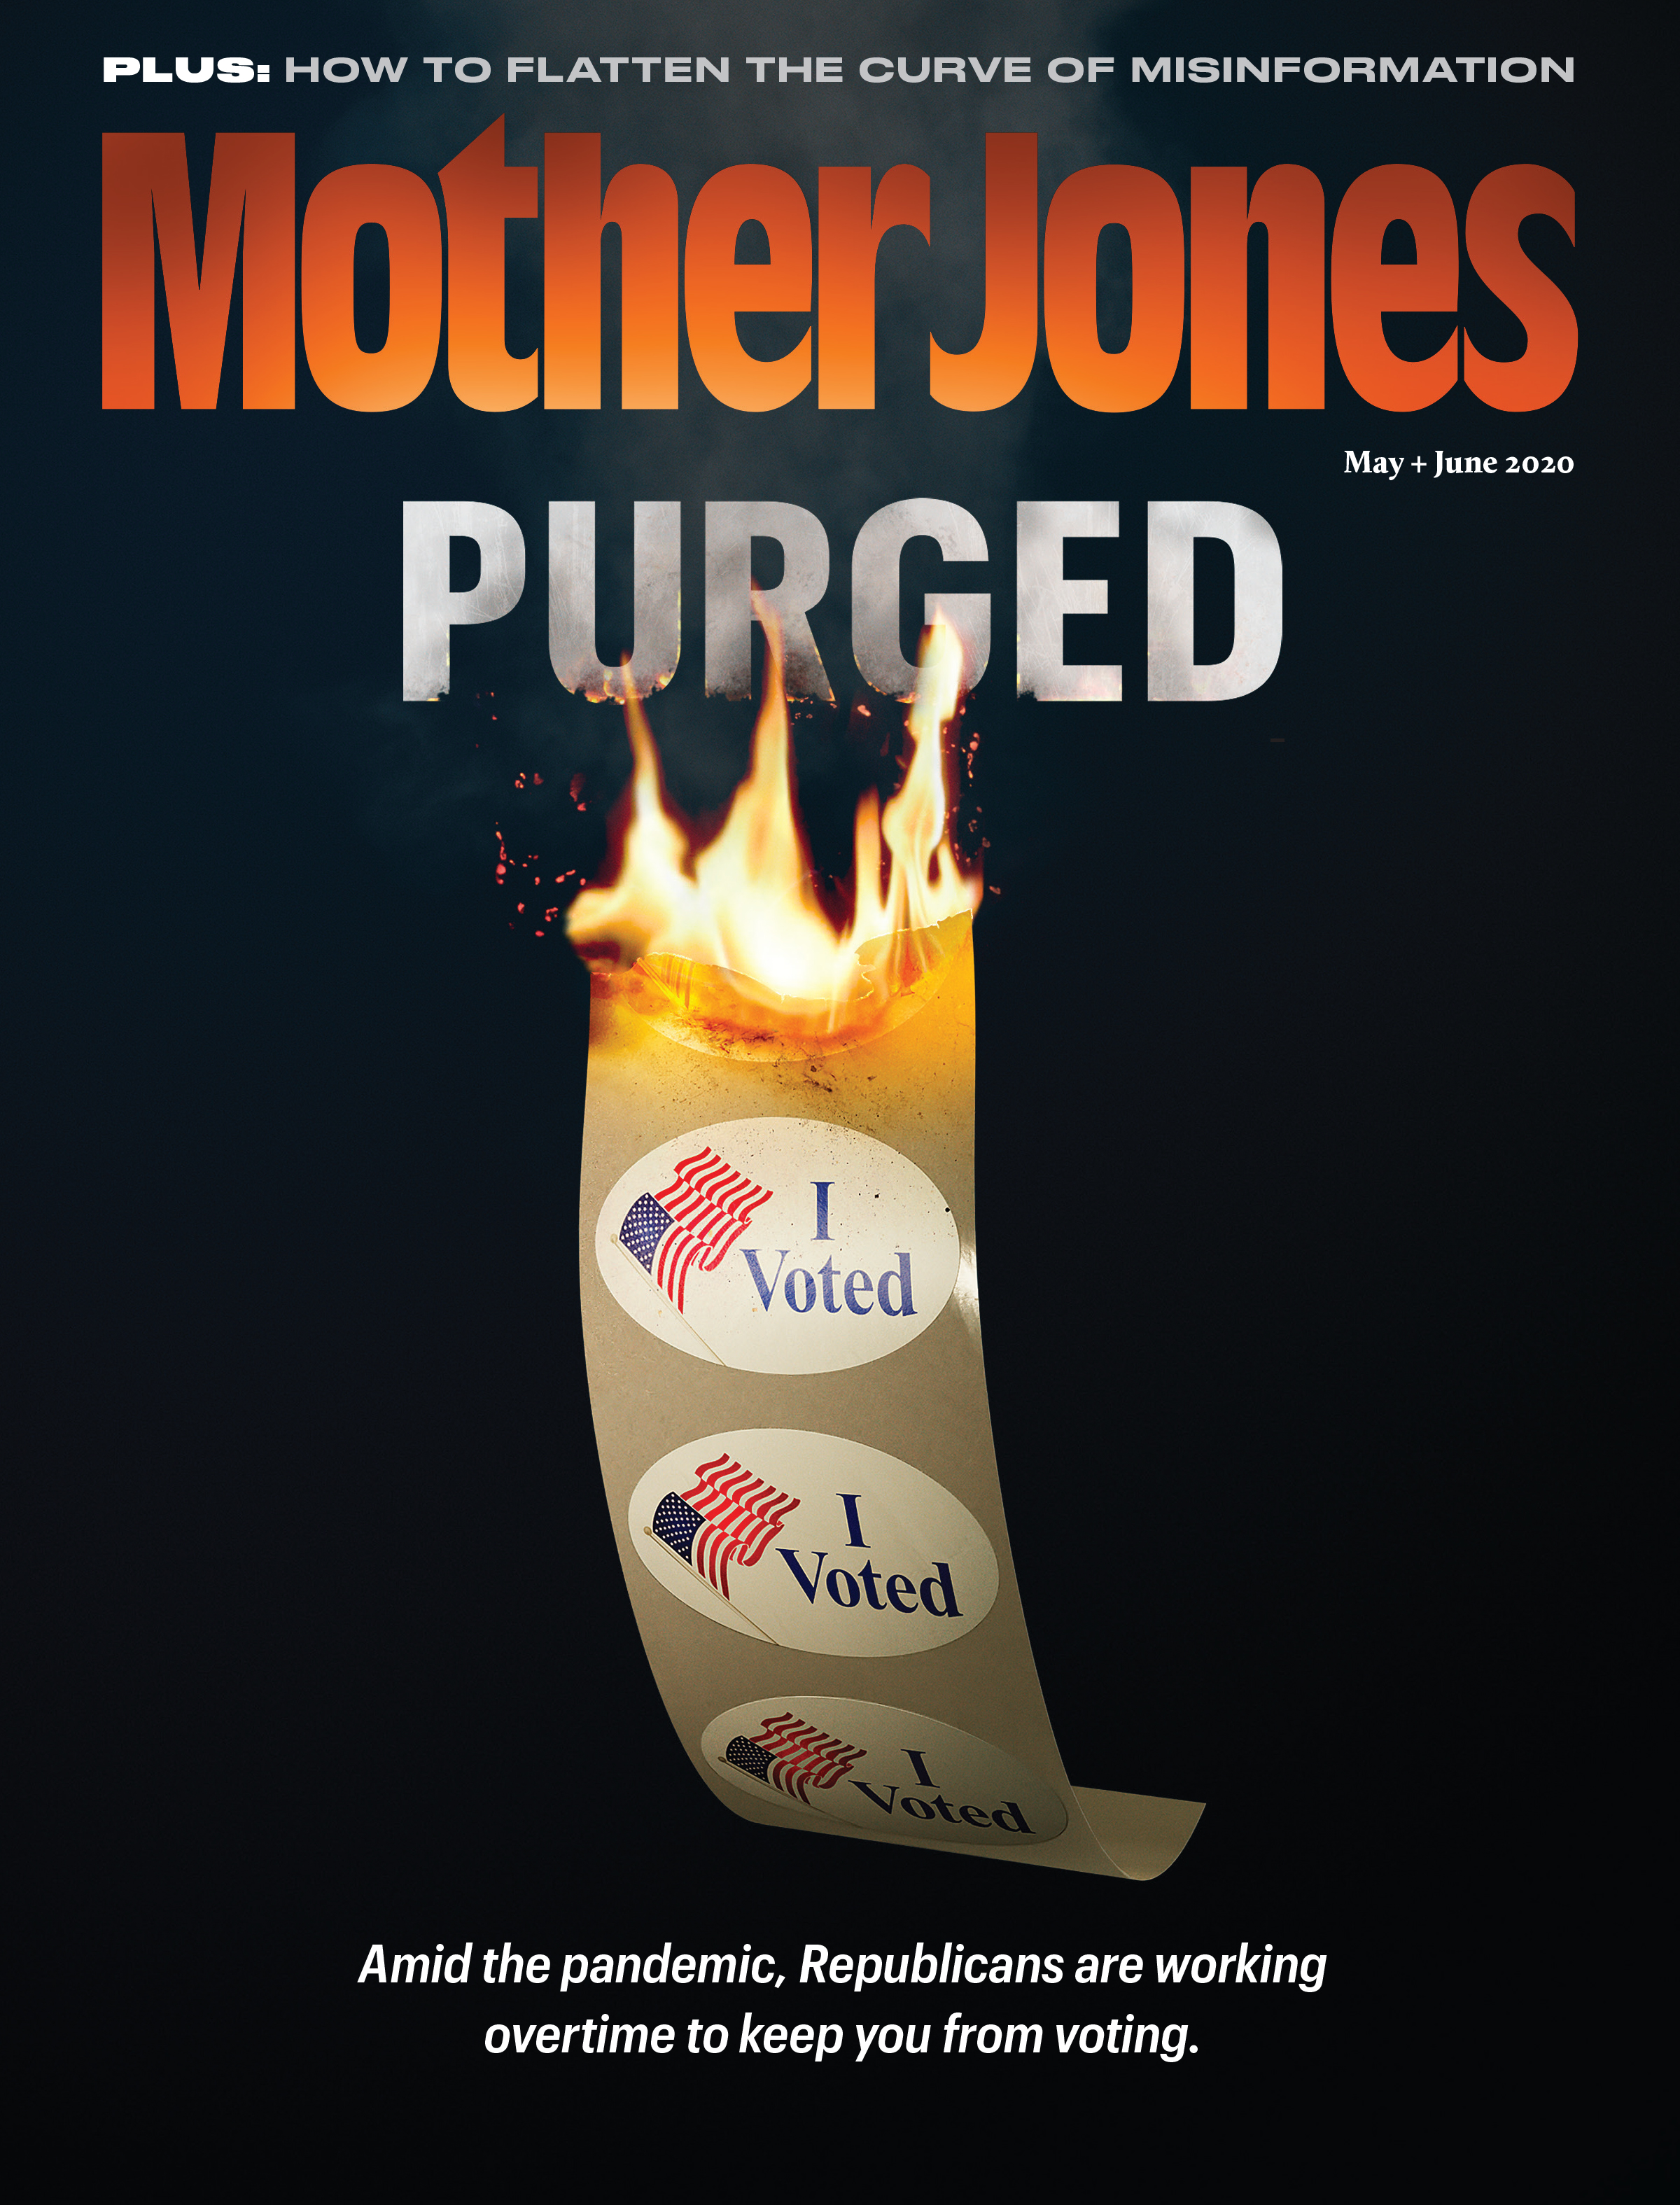 Mother Jones Magazine Cover : November + December 2019